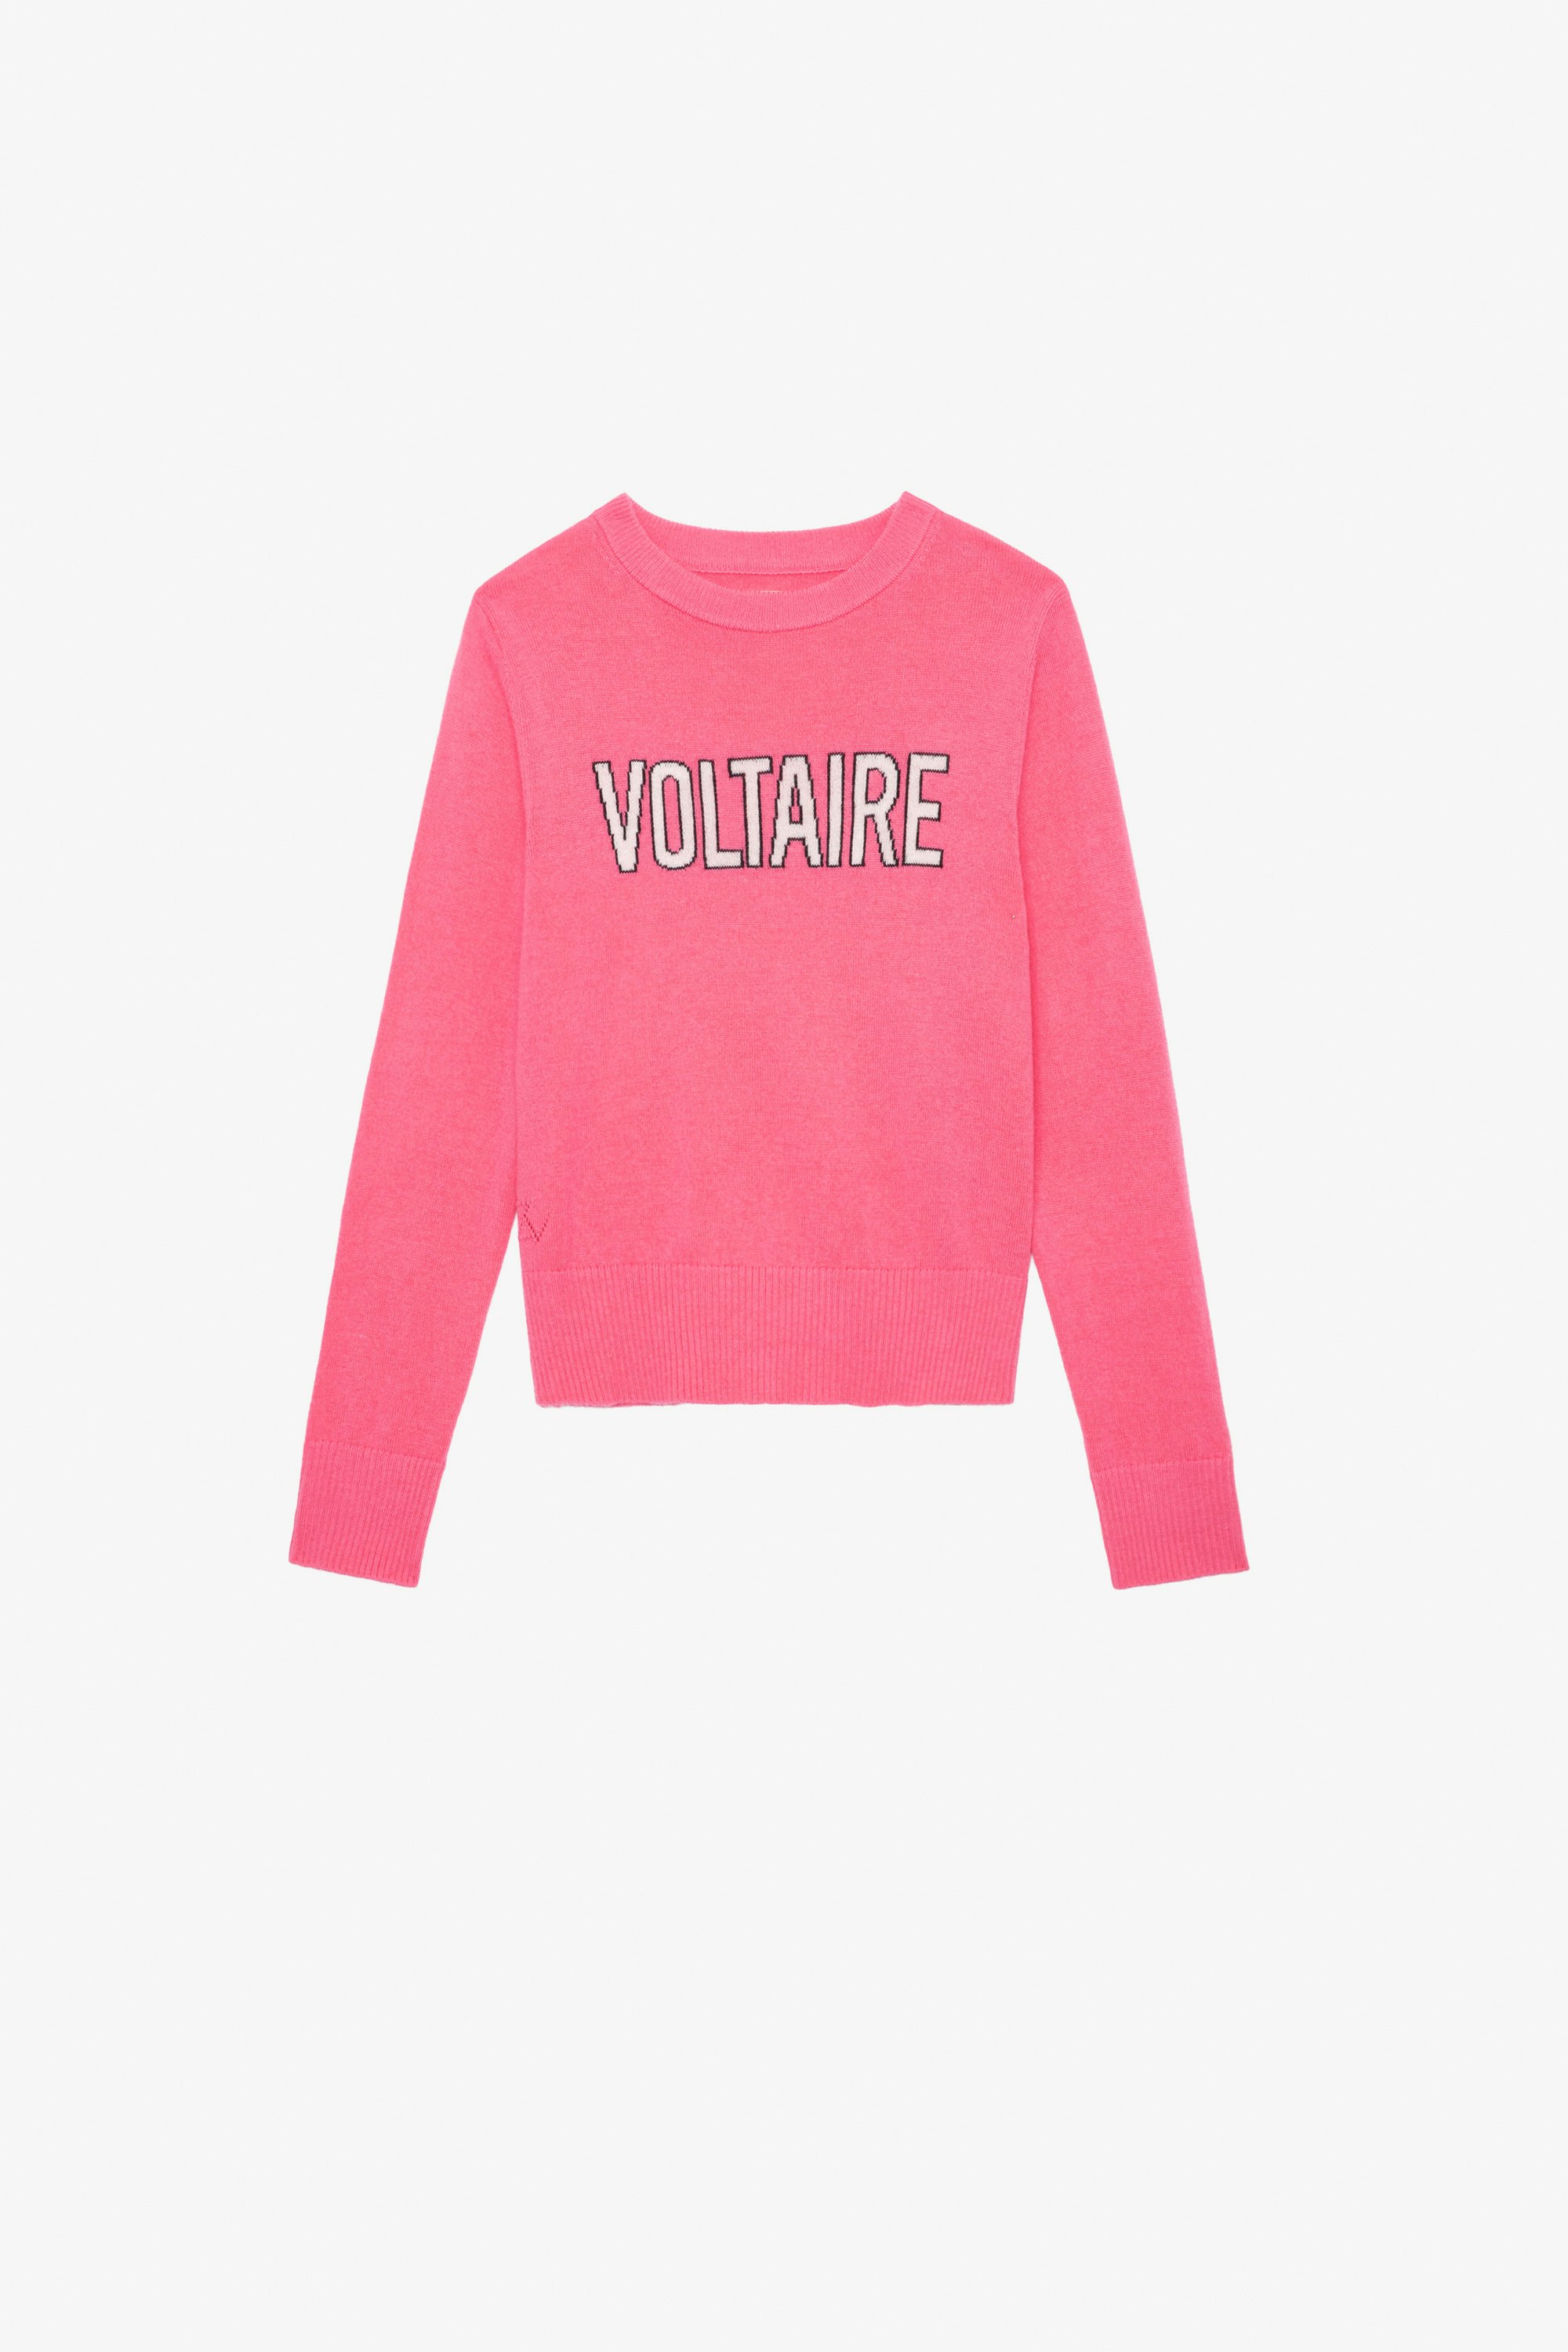 Drum Girls’ Jumper - Girls’ pink knit jumper with “Voltaire” slogan.